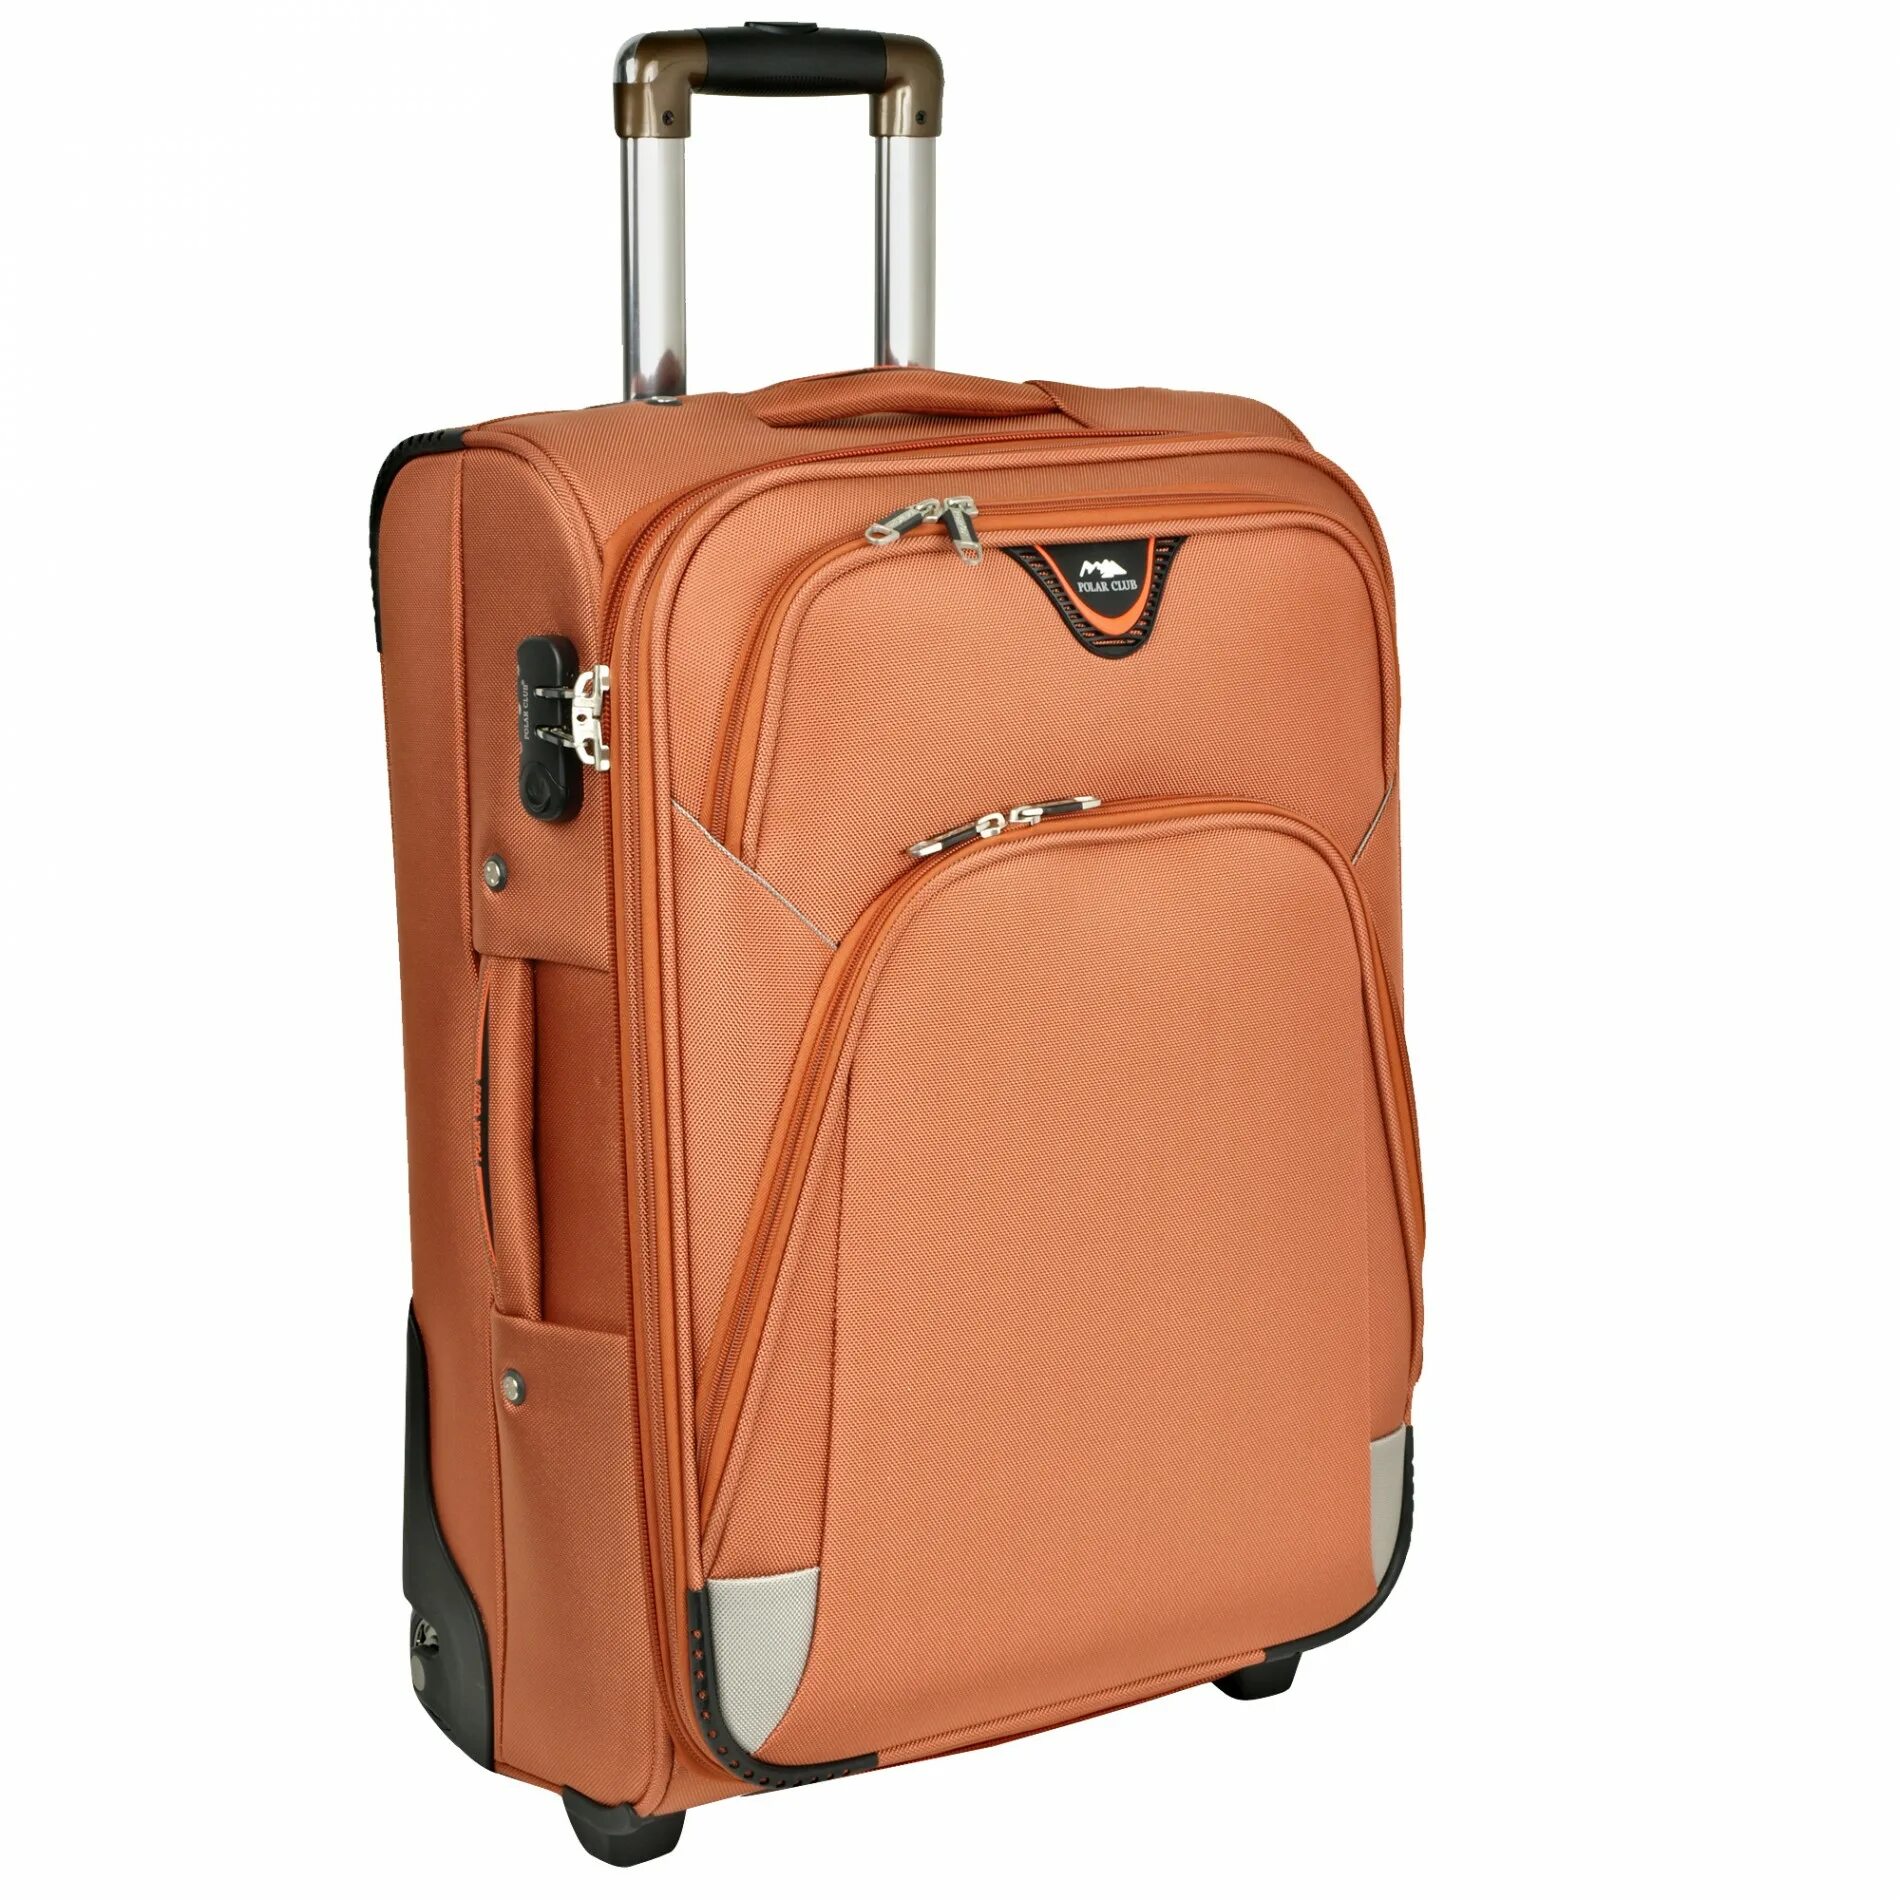 Чемодан фото. Polar 8149-20 чемодан средний на колесах. Чемодан Polar оранжевый. Сумка чемодан. Чемодан без колесиков.